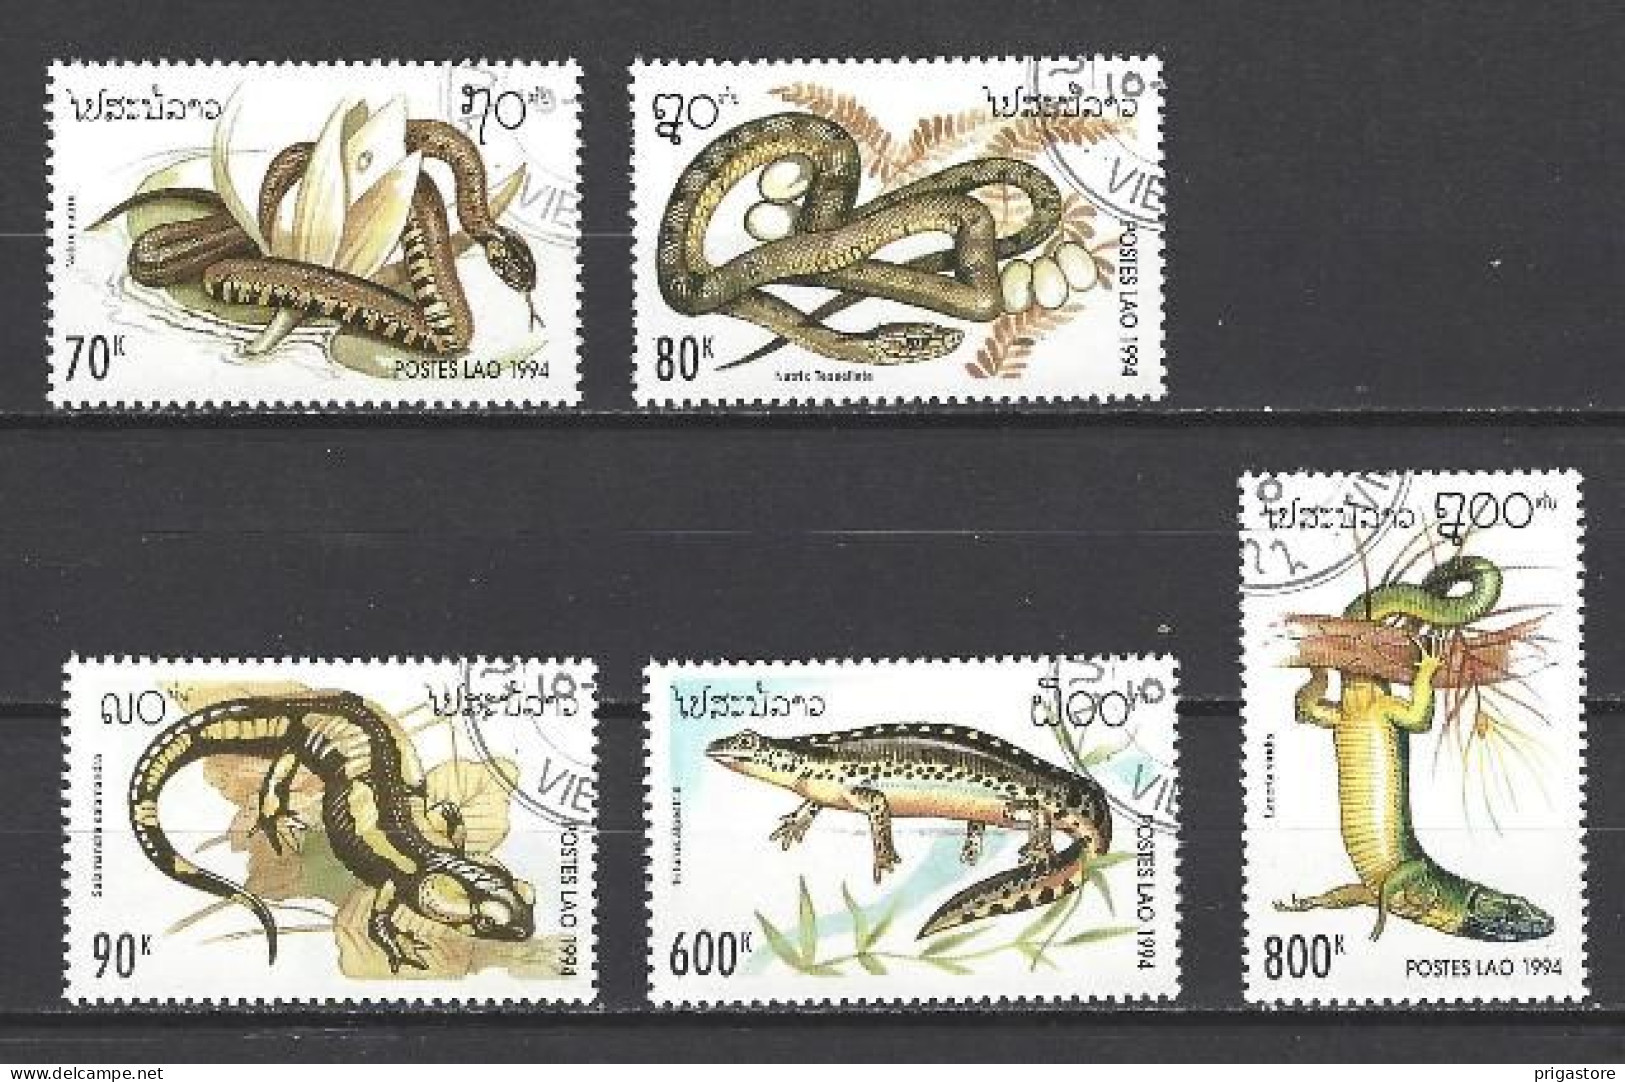 Animaux Reptiles Laos 1994 (124) Yvert N° 1134 à 1138 Oblitérés Used - Serpientes